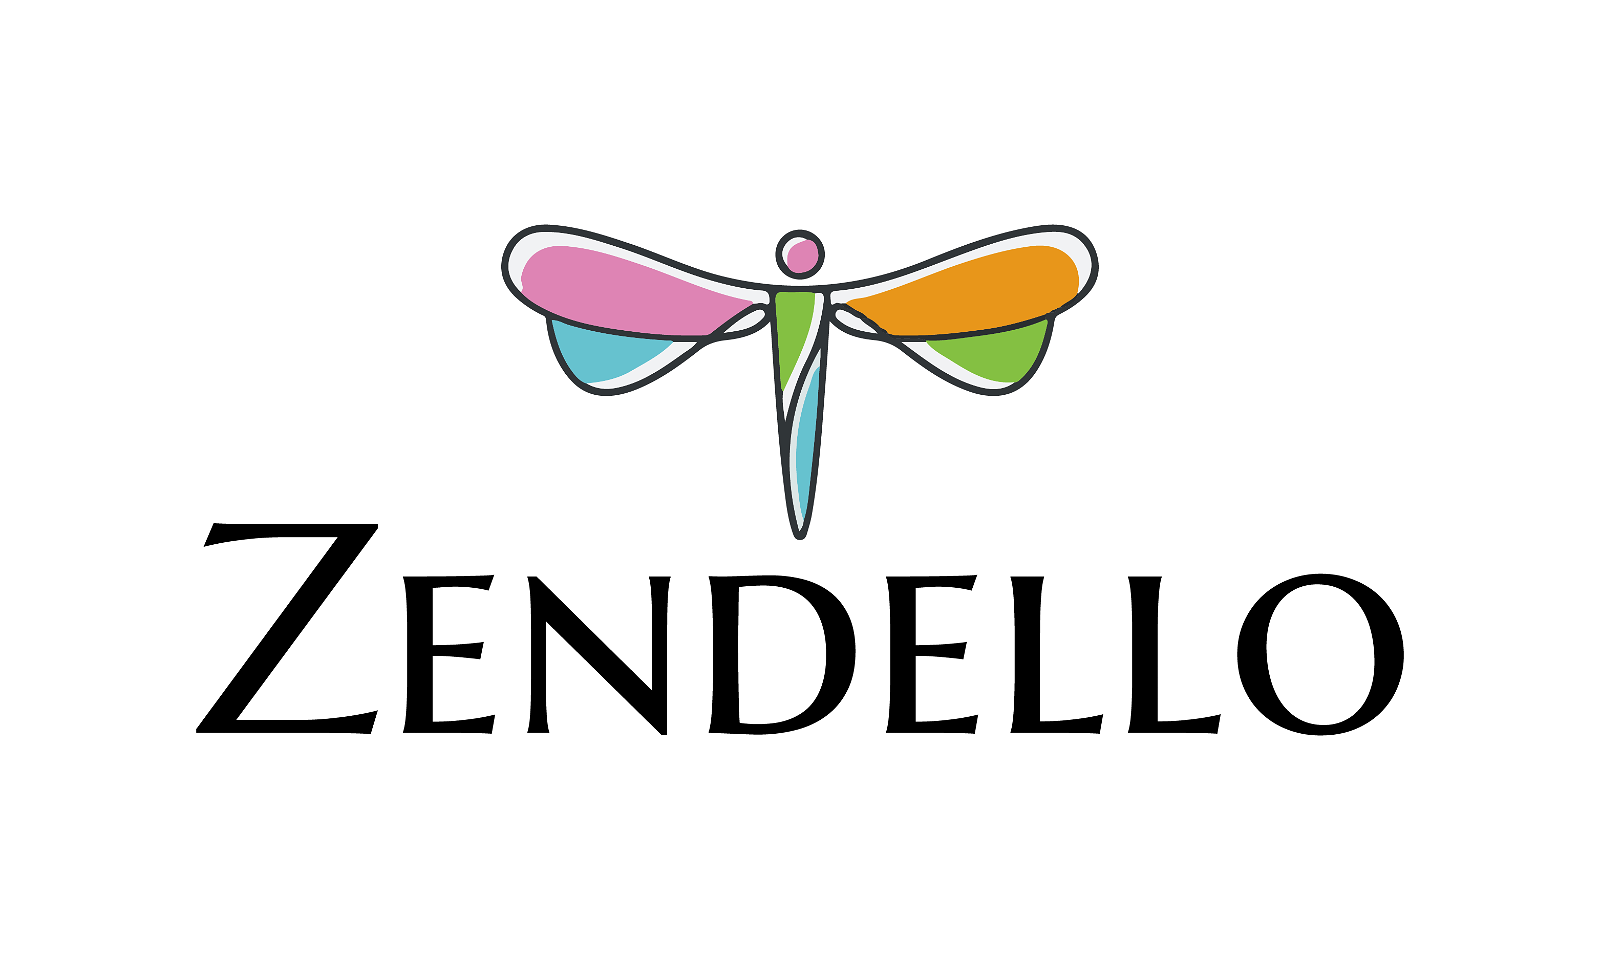 Zendello.com - Creative brandable domain for sale